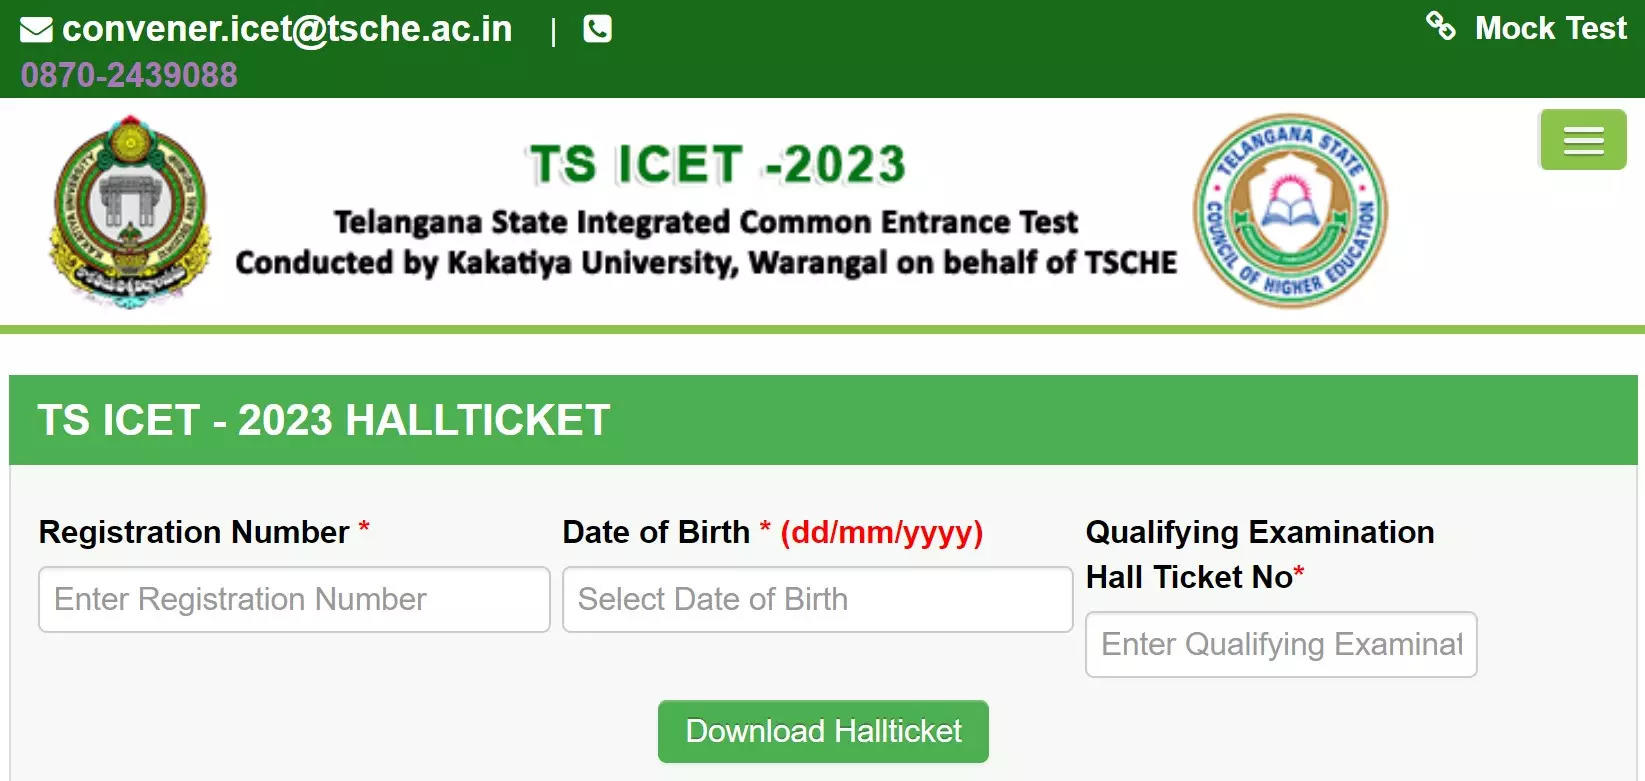 TS ICET Hall Ticket 2023 is vrijgegeven op icet.tsche.ac.in, download link hier